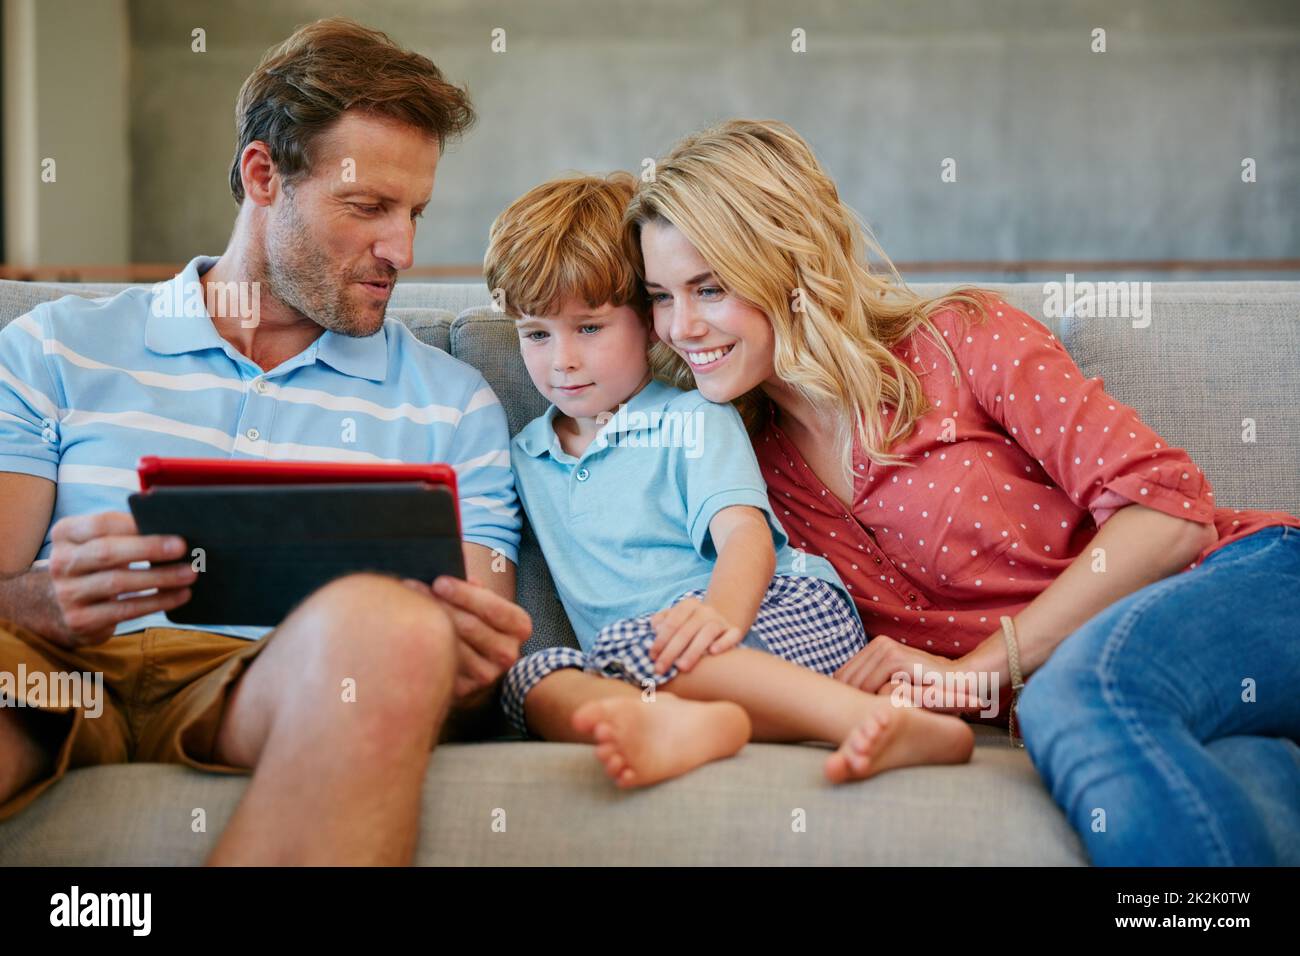 Es gibt immer etwas unterhaltsames online zu sehen. Eine Aufnahme einer Familie, die ein digitales Tablet zu Hause verwendet. Stockfoto